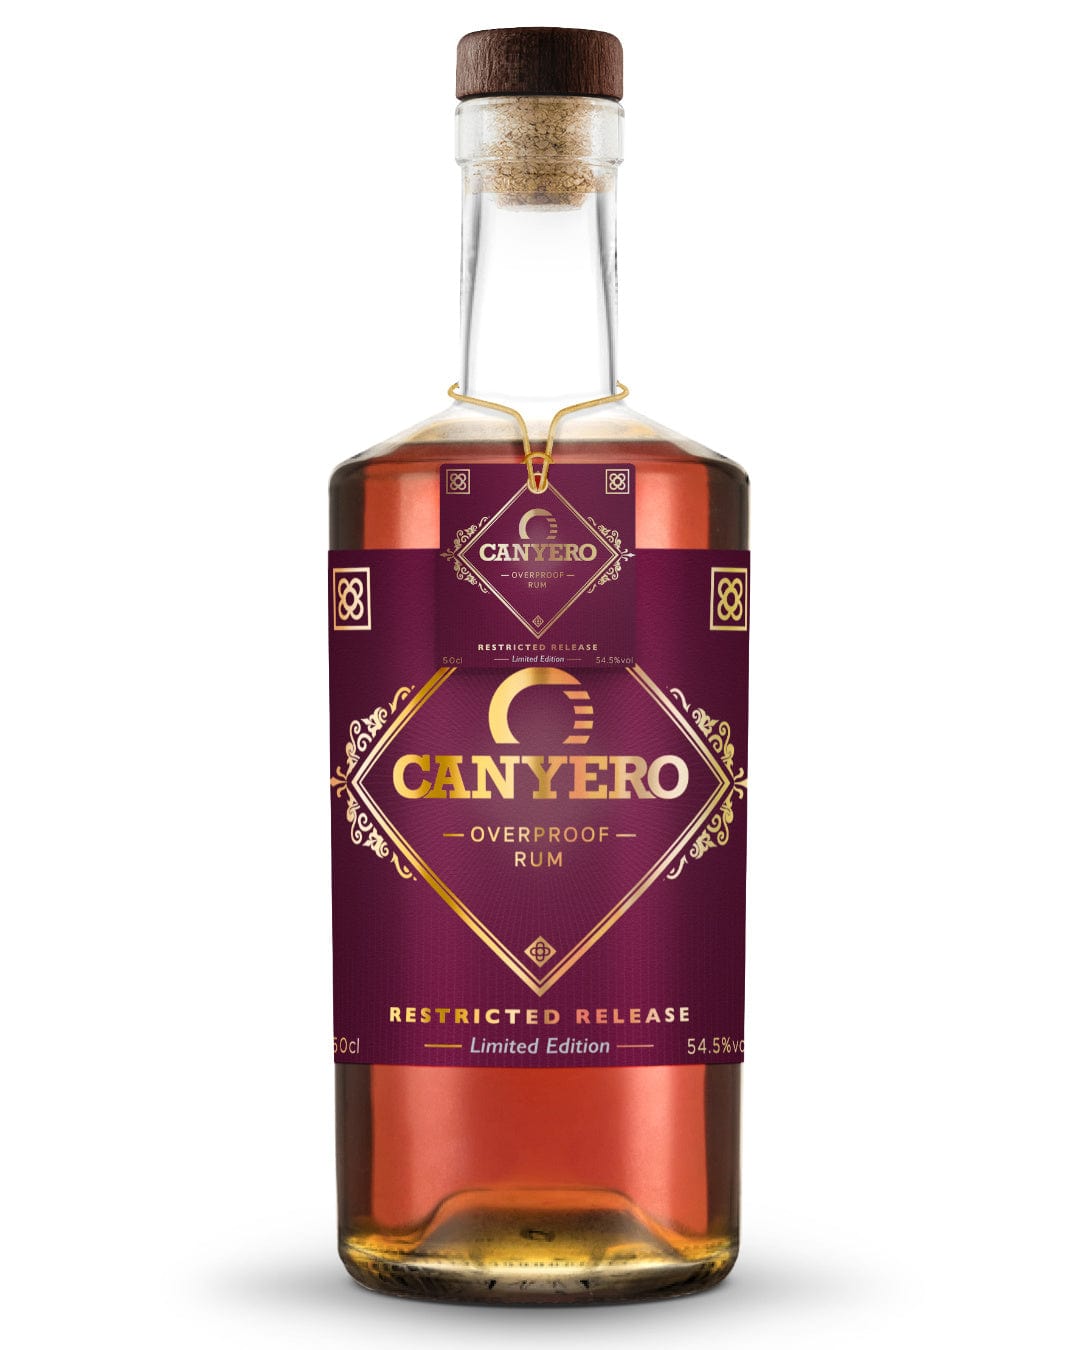 Canyero Reistricted Release Overproof Rum, 50 cl Rum